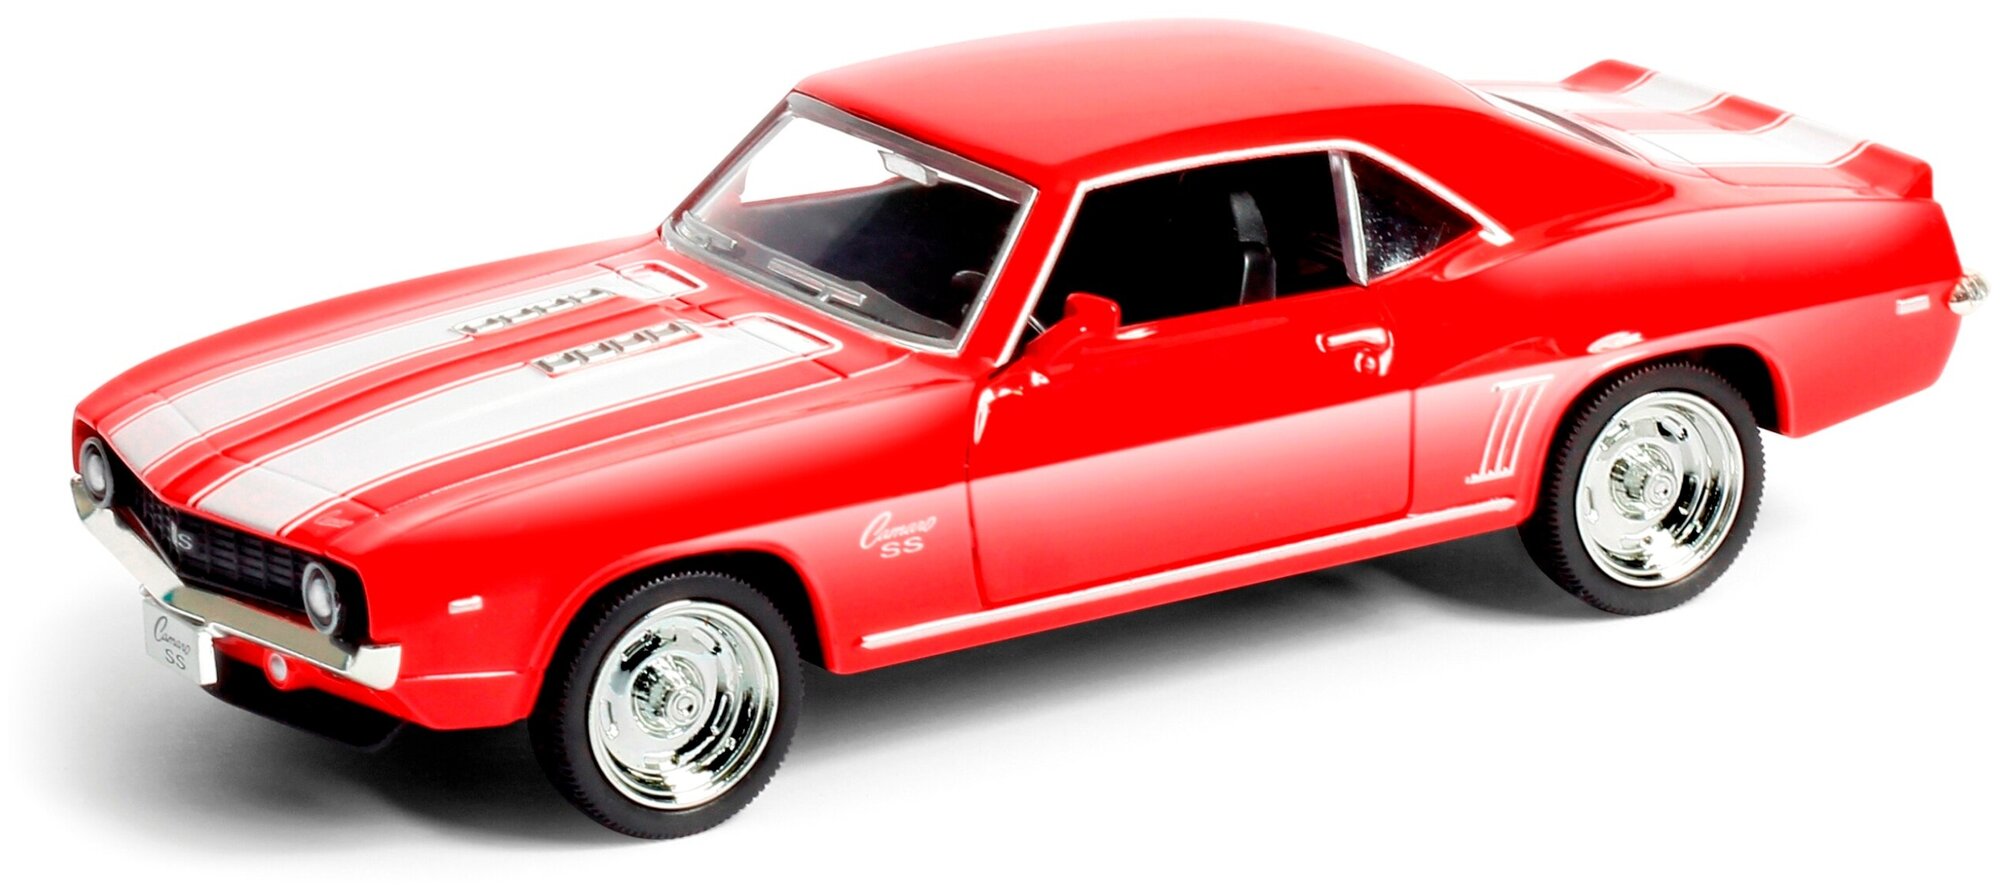 Машина металлическая RMZ City серия 1:32 Chevrolet Camaro 1969, красный цвет, двери открываются 554026-RD